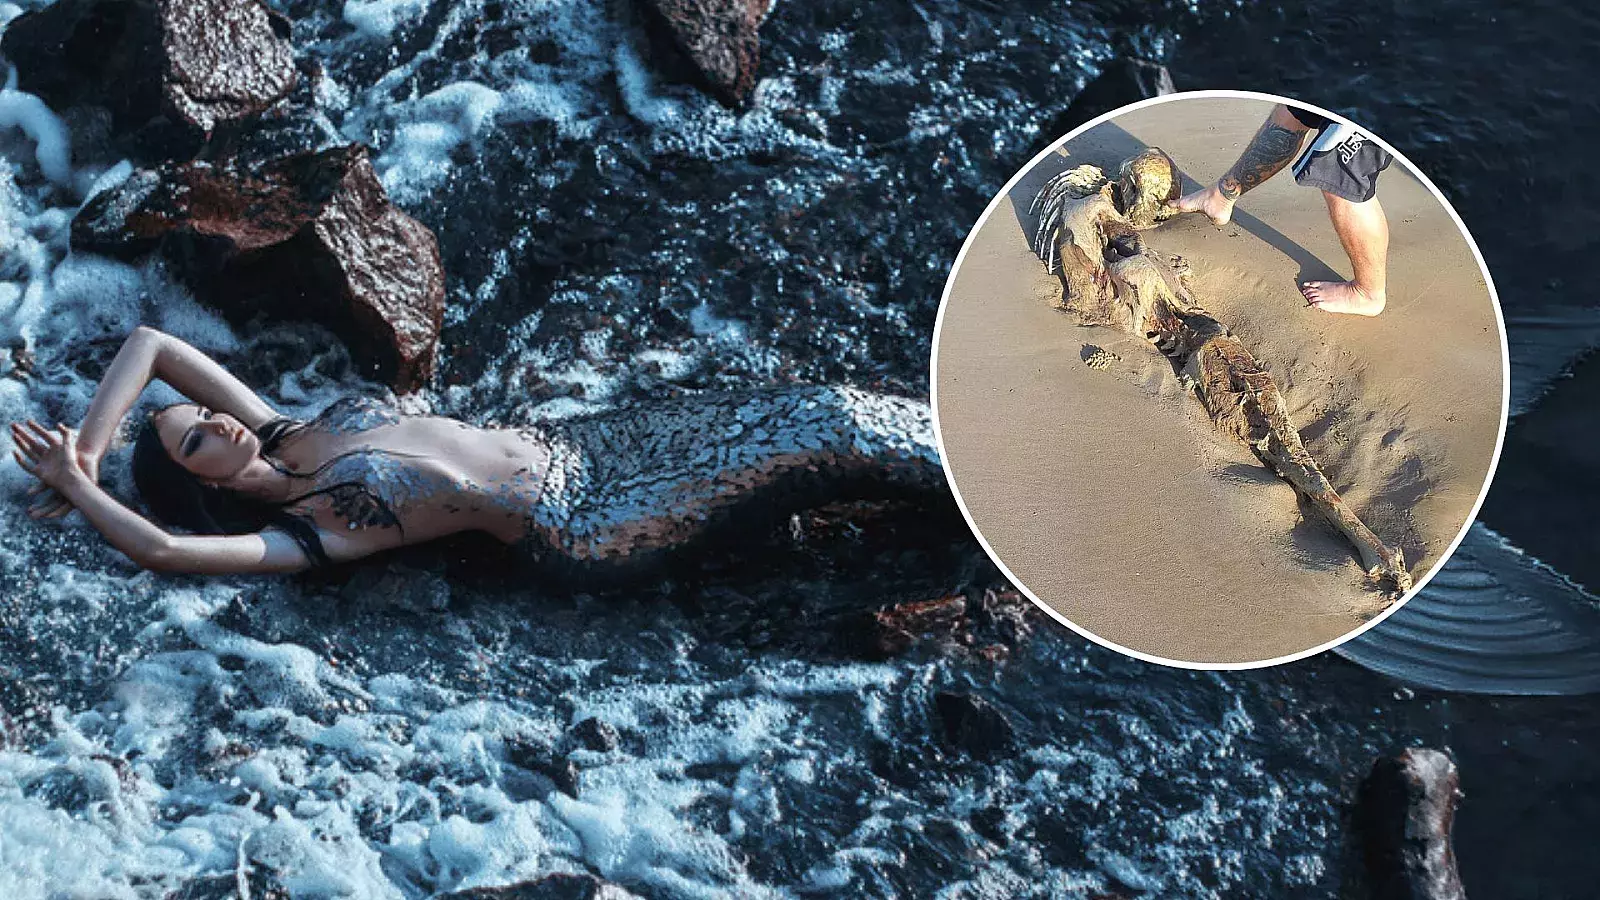 ¿Una sirena? Fotos de extraño esqueleto causan conmoción en redes sociales